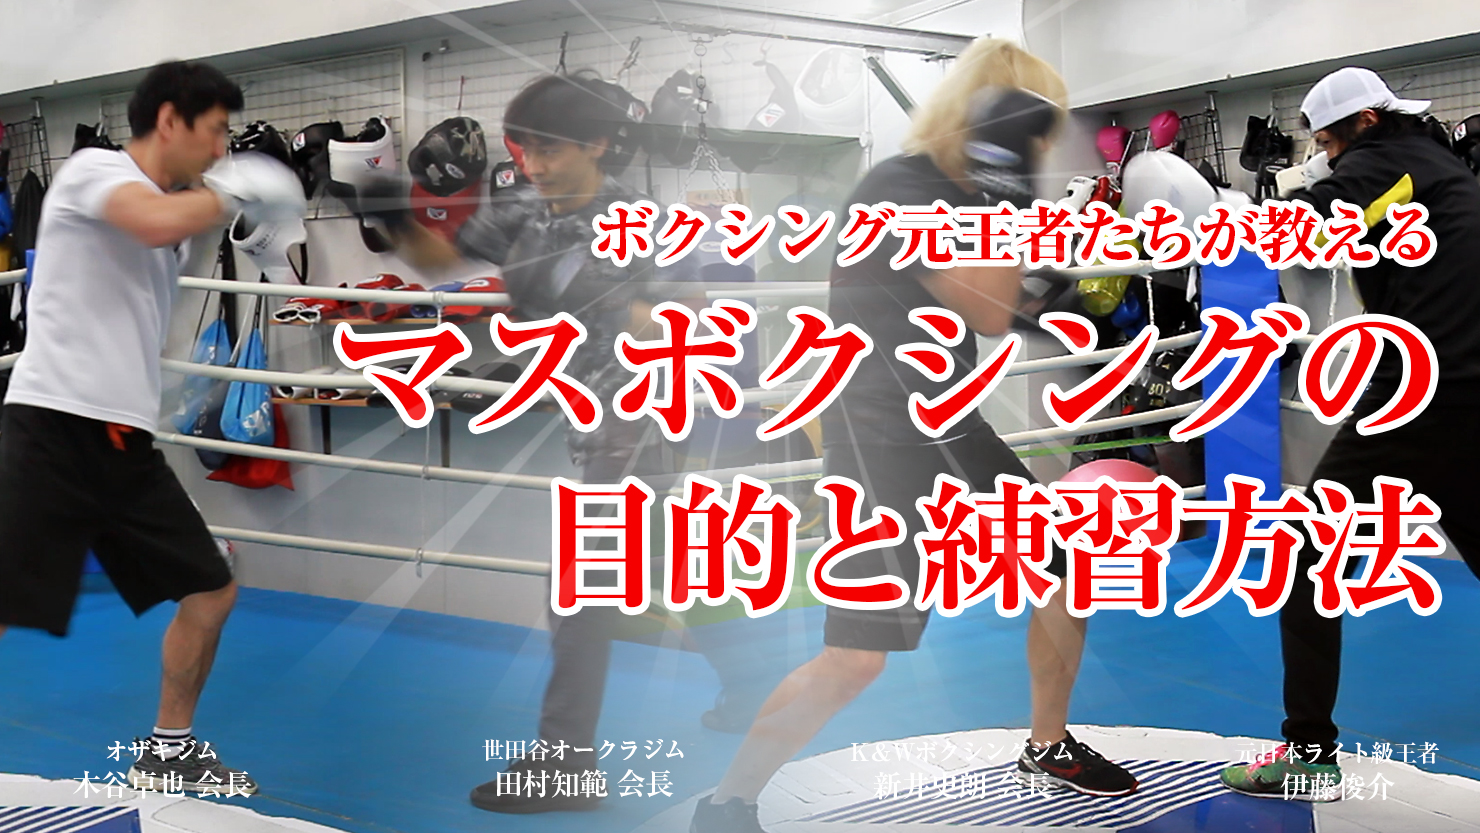 マスボクシングの目的とポイント ボクシング王者 世界王者のトレーナーが教えるマスボクシング プロレス 格闘技 ボクシングの情報配信 カクトウログ